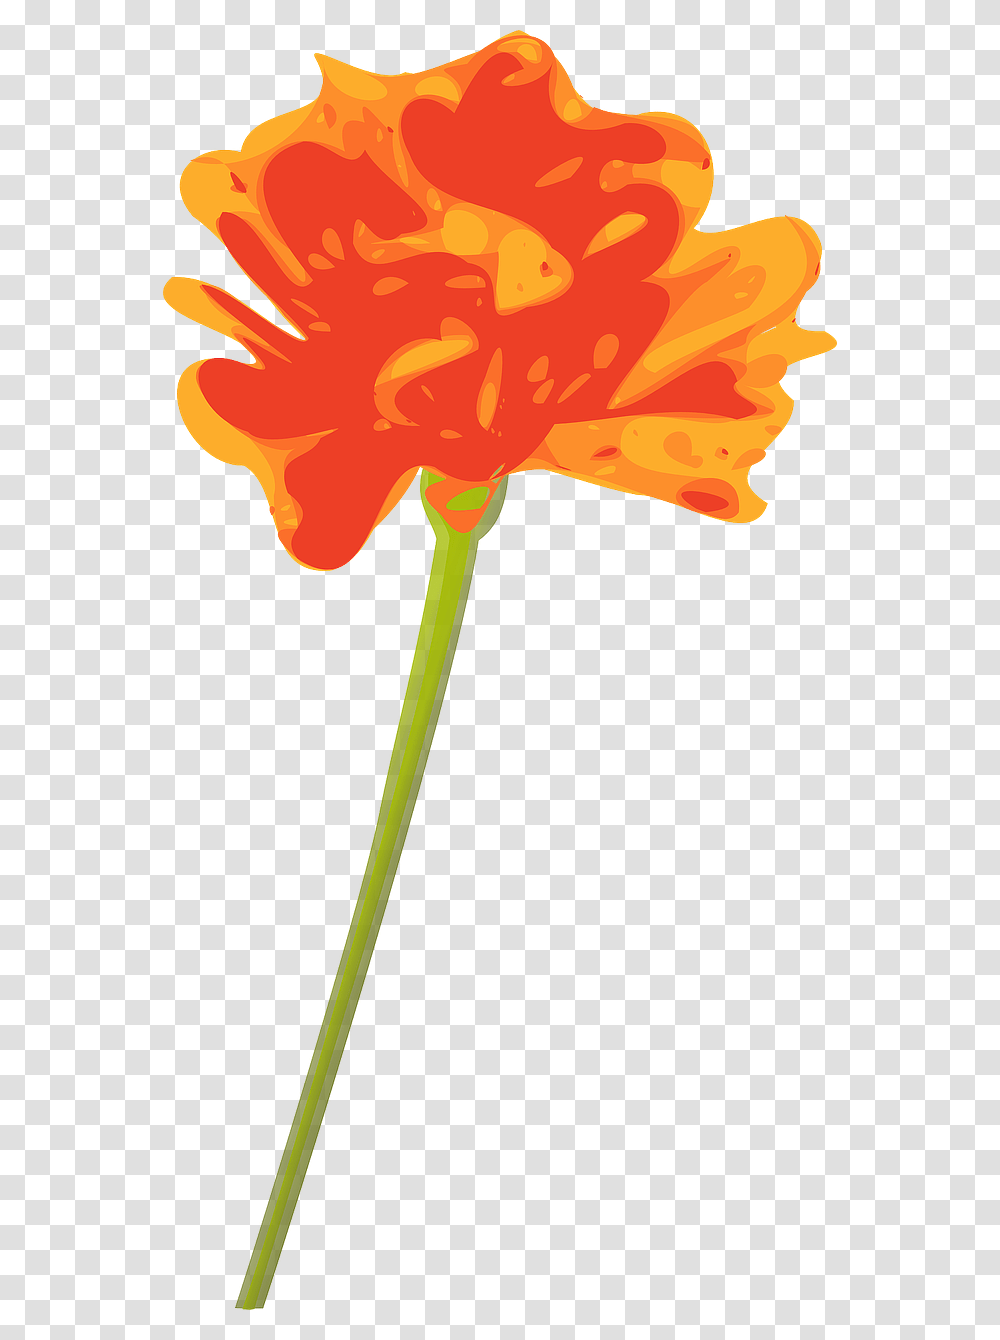 Orange Flower With Stem, Plant, Leaf, Blossom, Petal Transparent Png